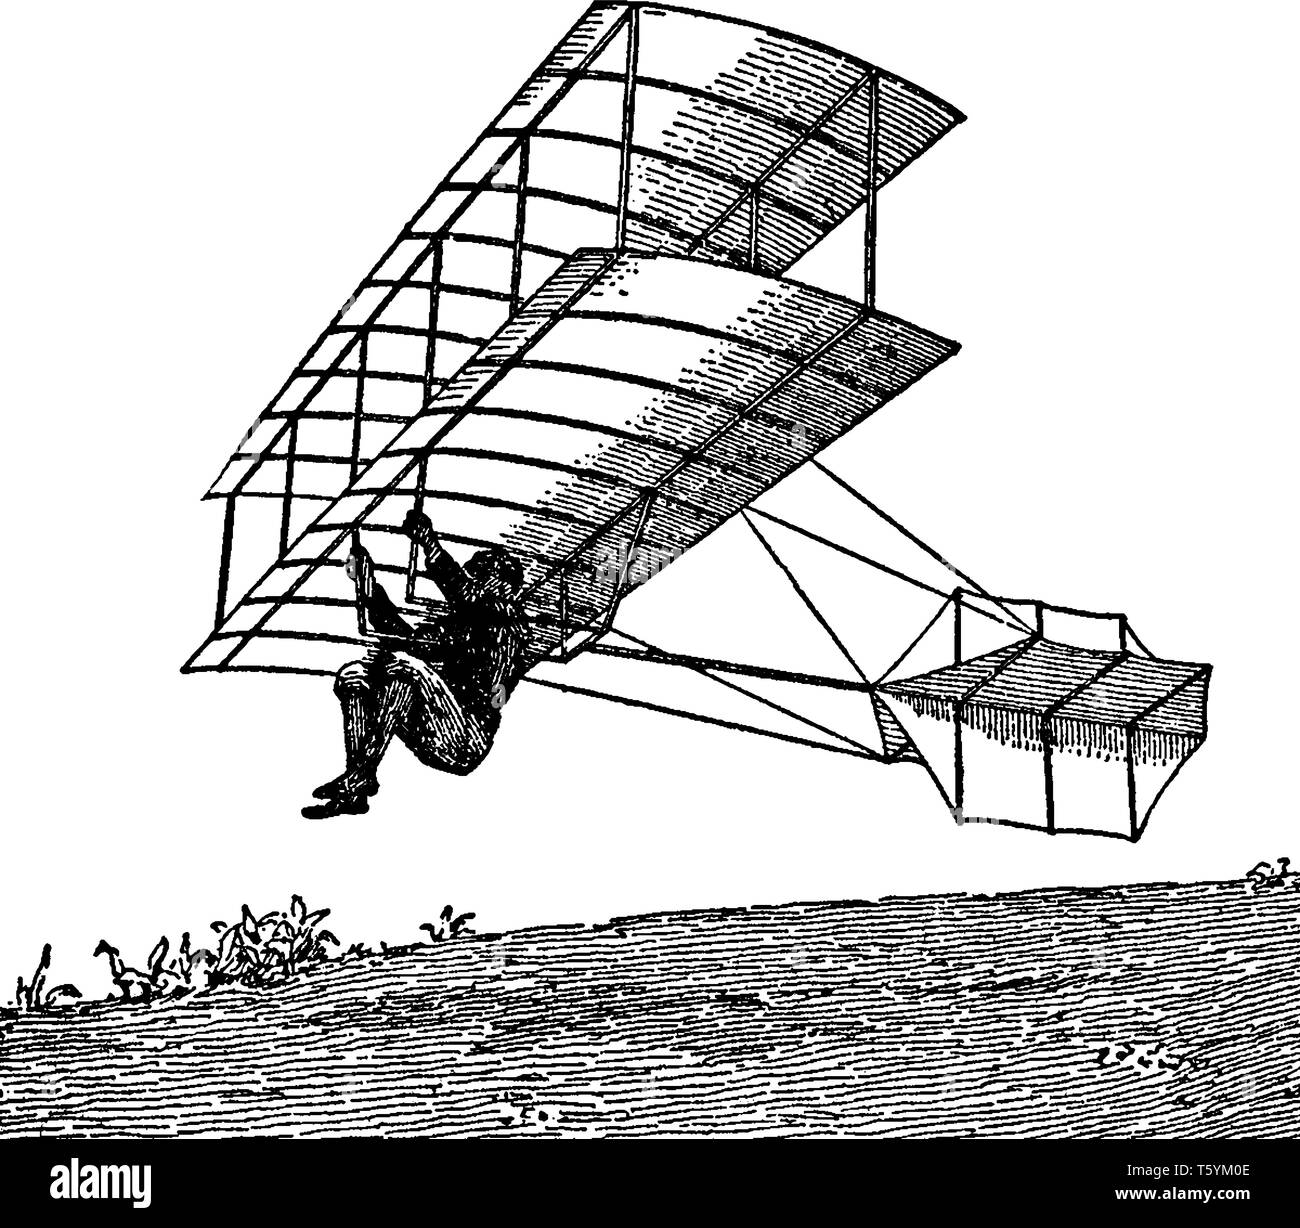 Un biplano di scorrevolezza della macchina come sviluppato da Chanute era il suo più grande successo nel campo dell'aeronautica, vintage disegno della linea o incisione illustrati Illustrazione Vettoriale